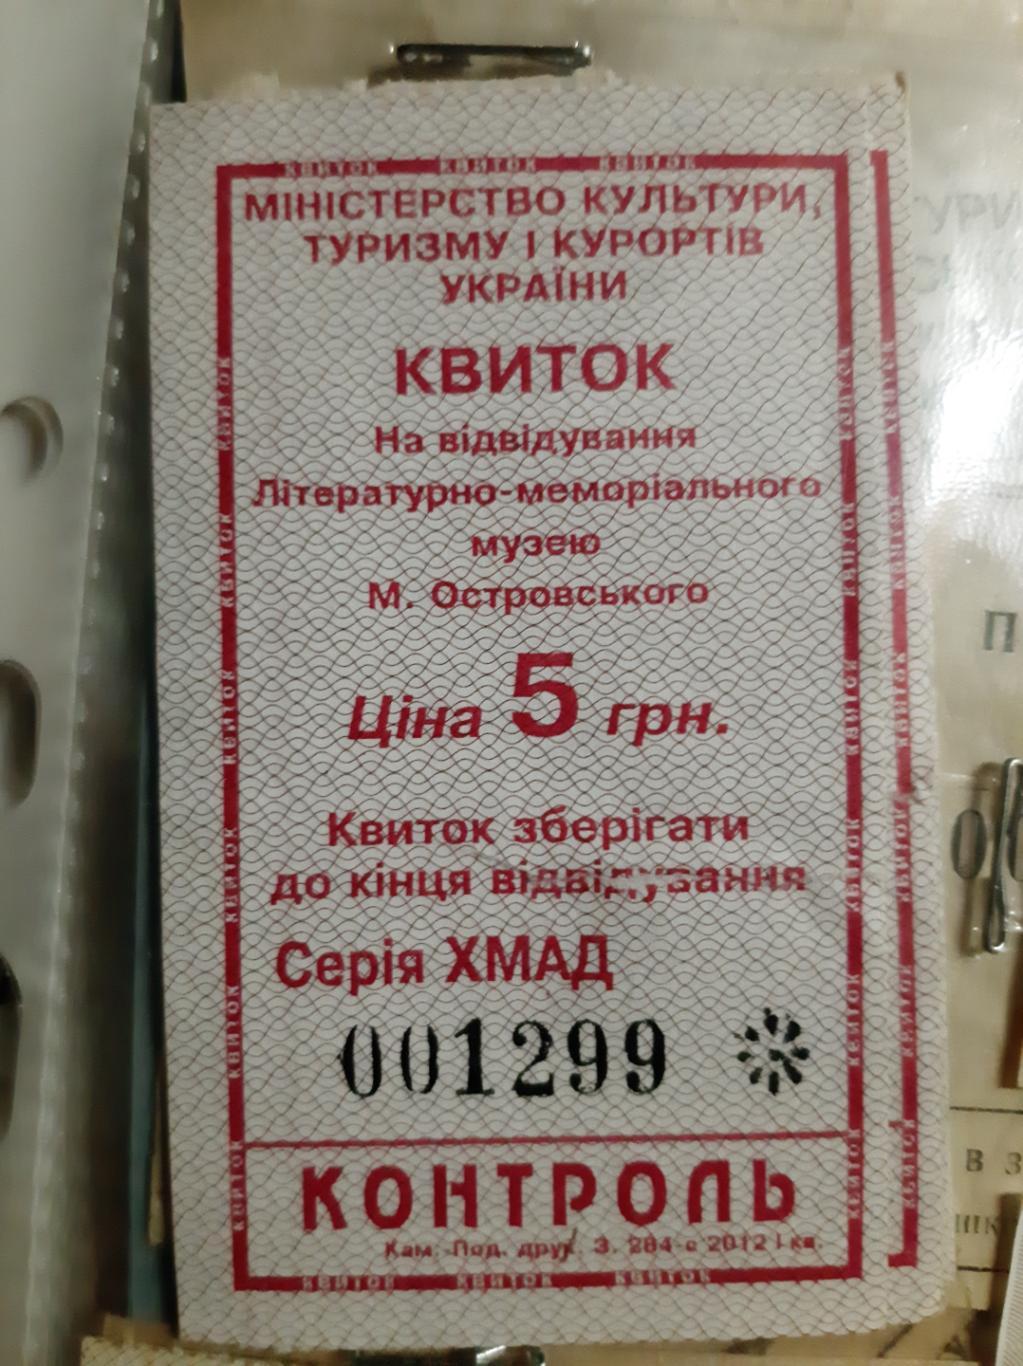 Билет Музей Николая Островского г. Шепетовка